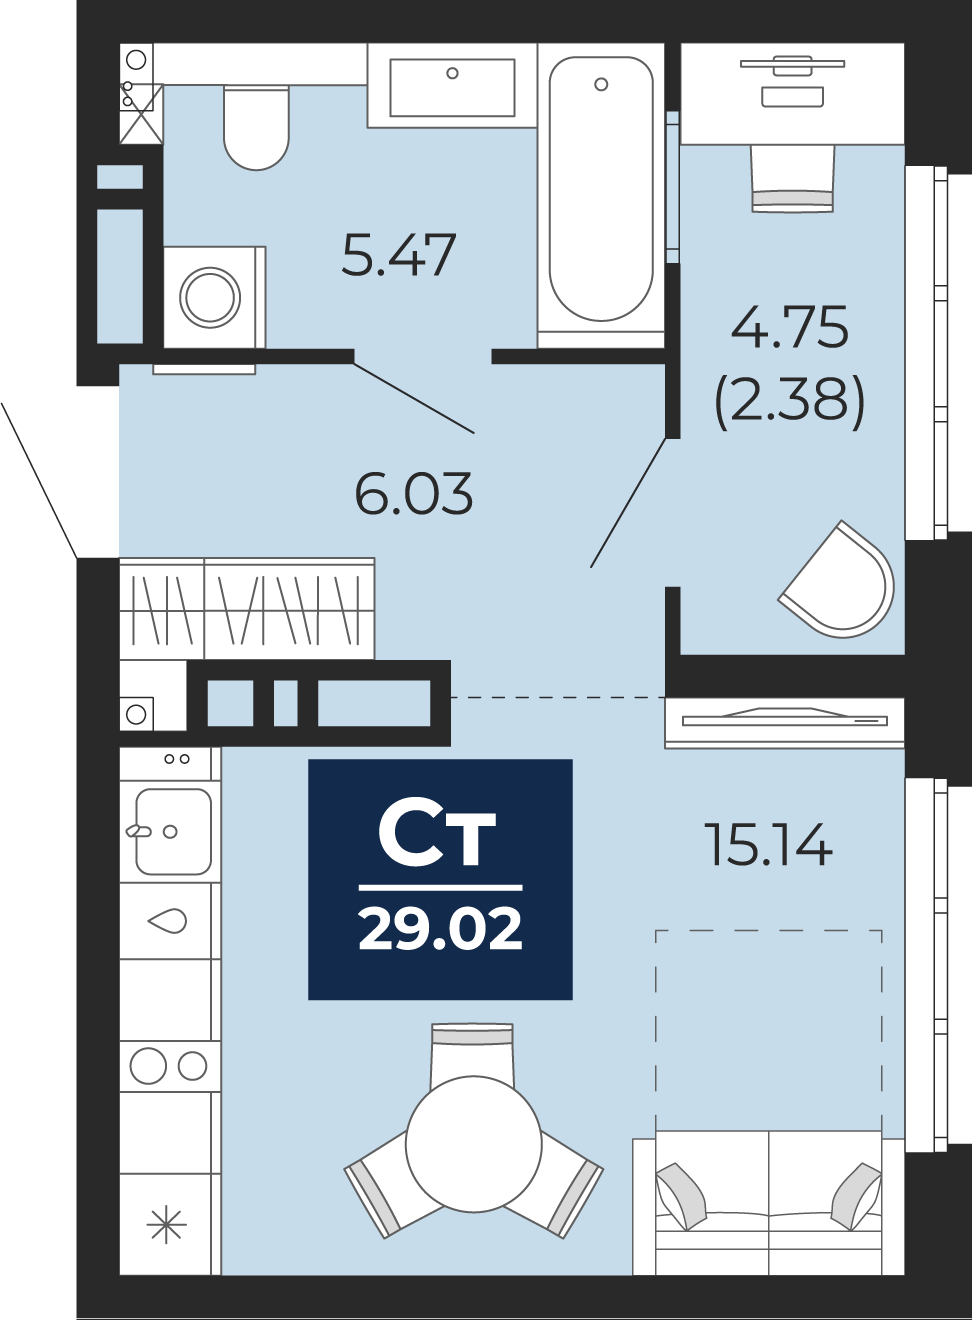 Квартира № 361, Студия, 29.02 кв. м, 10 этаж